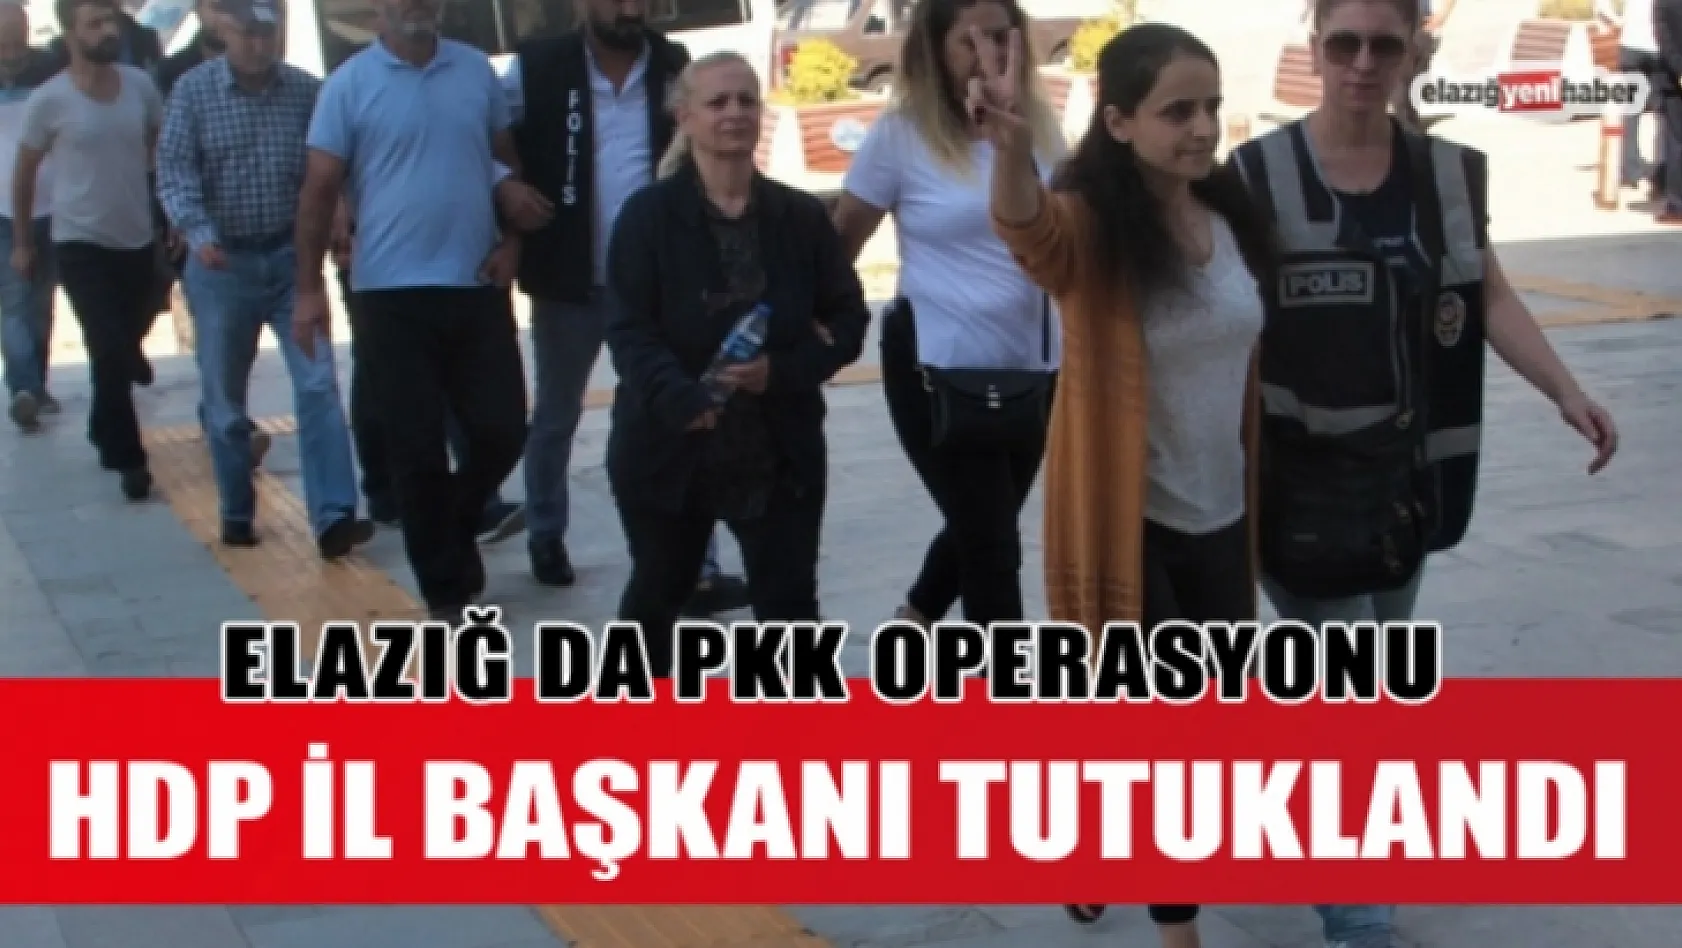 Elazığ'da HDP'nin Eş Başkanı Tutuklandı